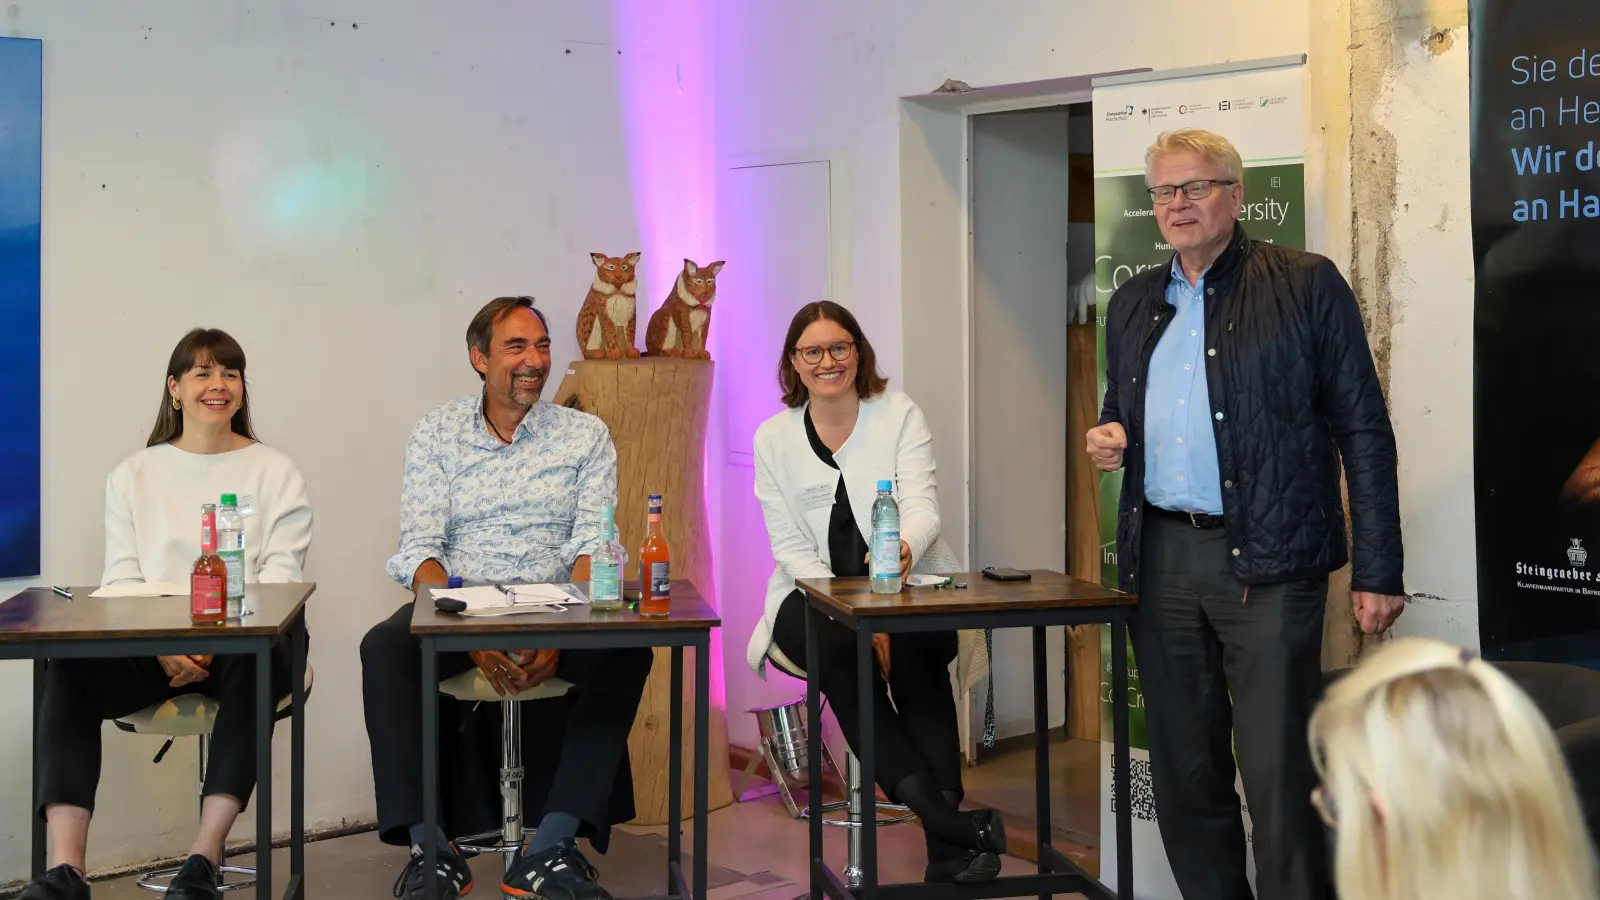 Oberbürgermeister Thomas Ebersberger (re.) lobte den Innovationsgeist der Founder und freute sich über die erfolgreiche Veranstaltung. (Foto: Universität Bayreuth/Anna-Katharina Baumgärtner)